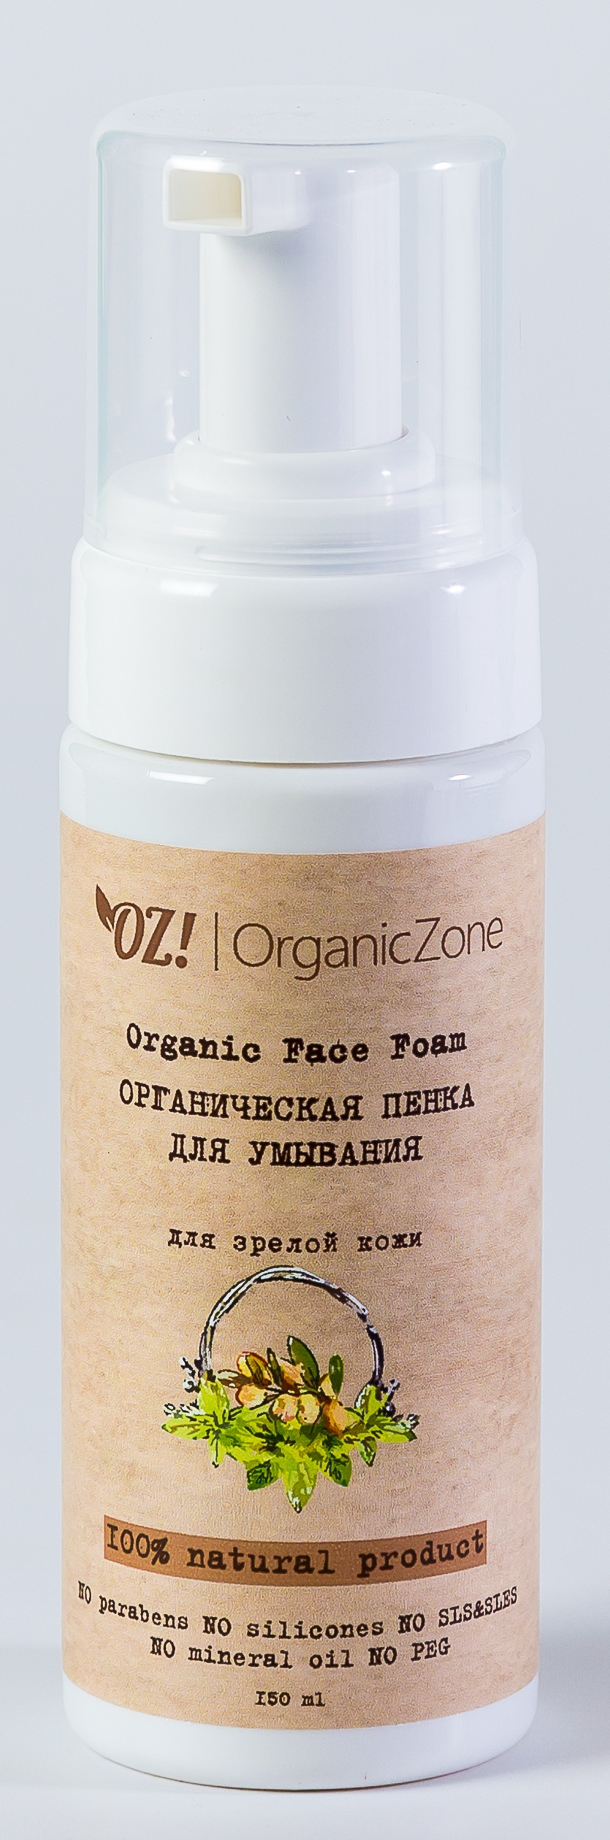 Купить Органическая пенка для умывания для зрелой кожи, OrganicZone, -, Organic Zone